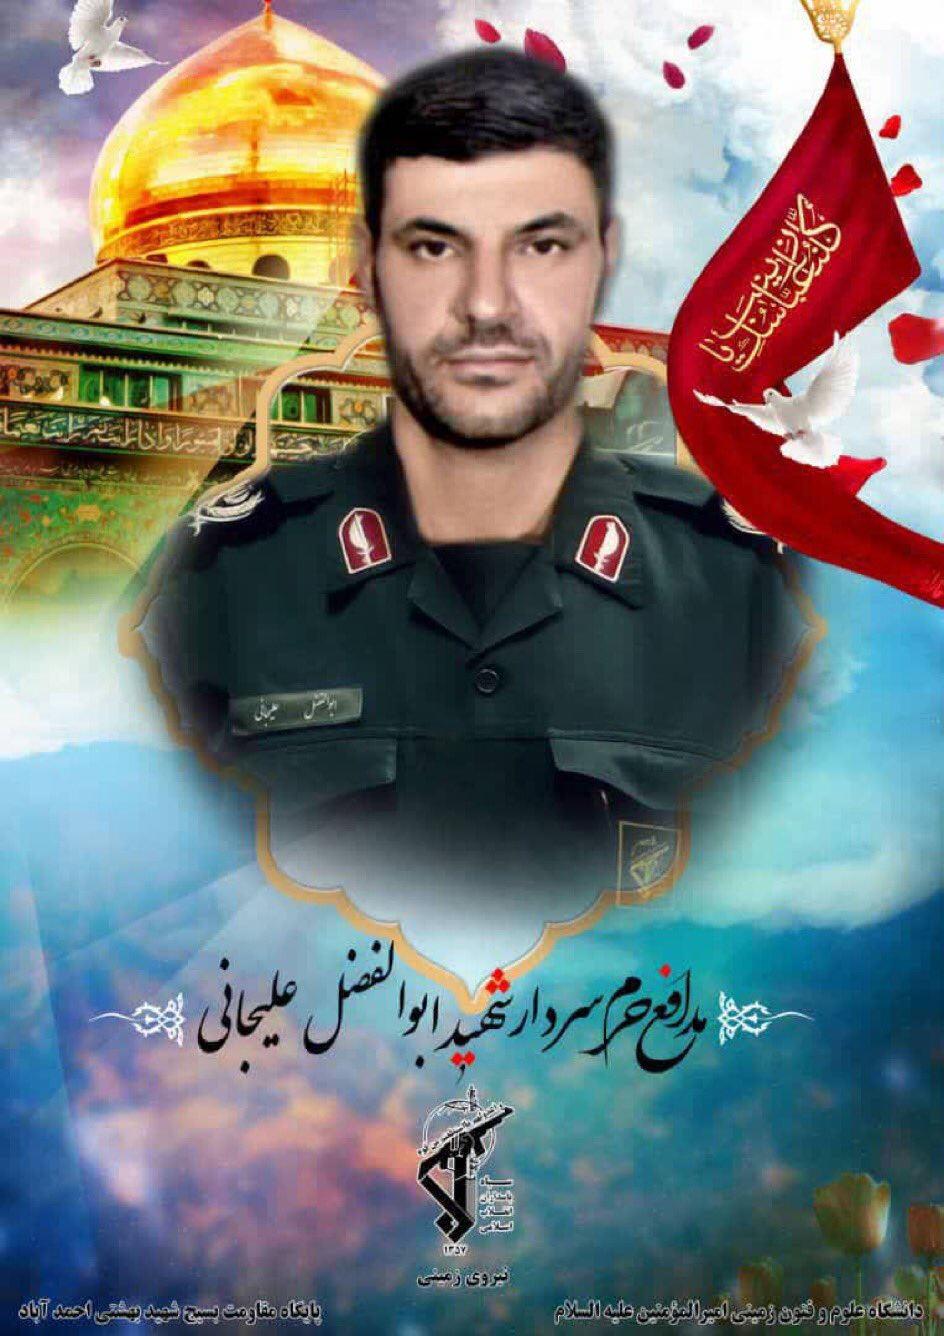 Ölen İranlı general için sosyal medyada paylaşılan bir afiş